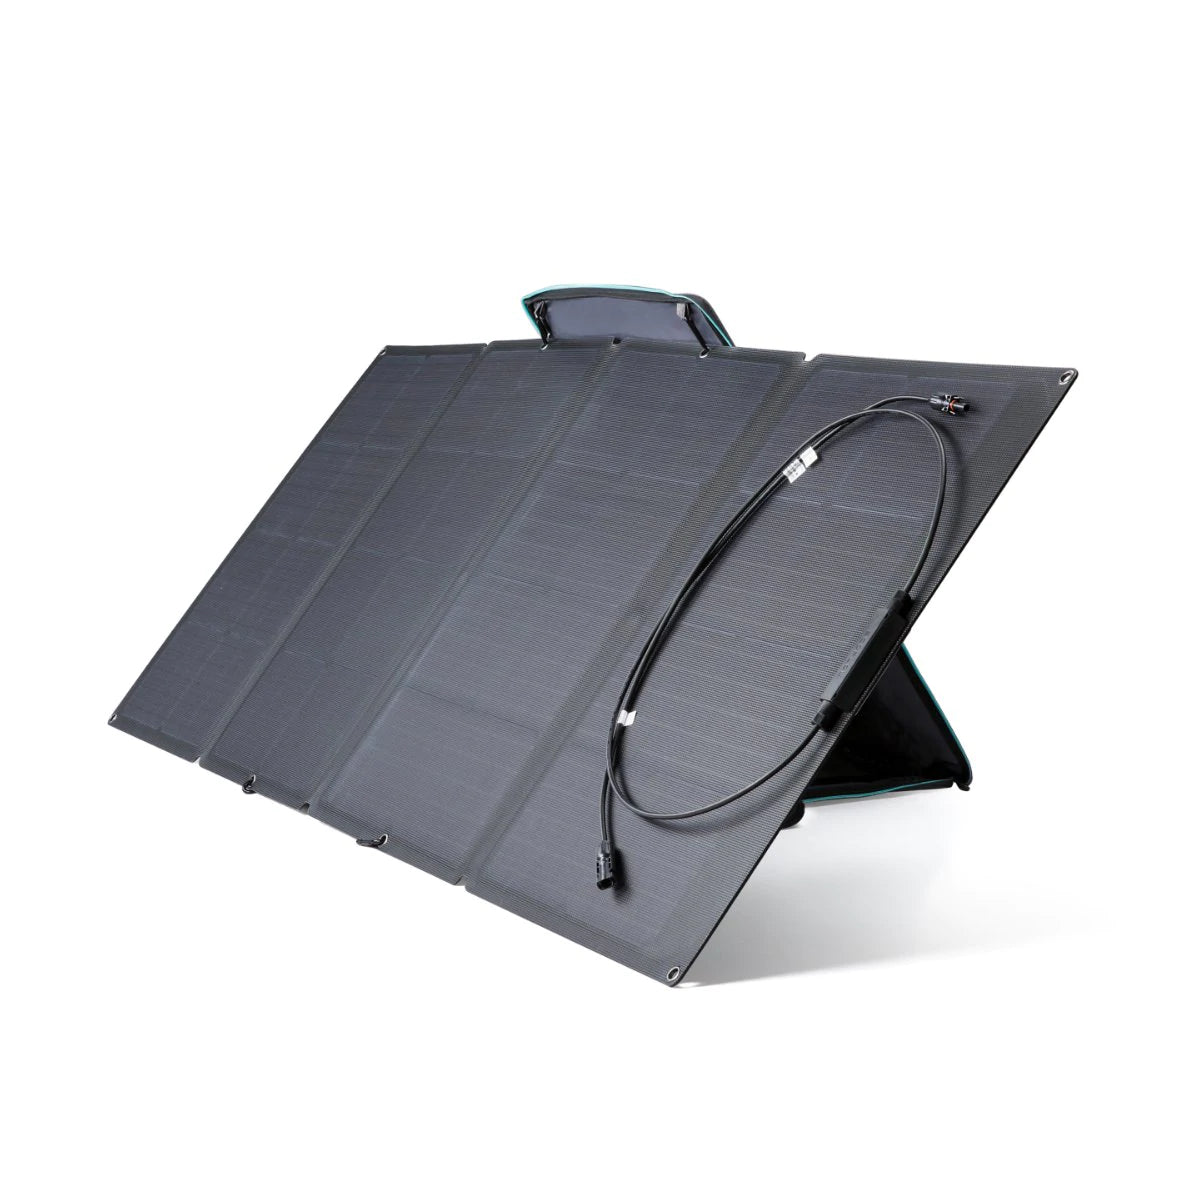 EcoFlow Delta 1000 + 1x 110W Solar Panel Solar Generator Kit